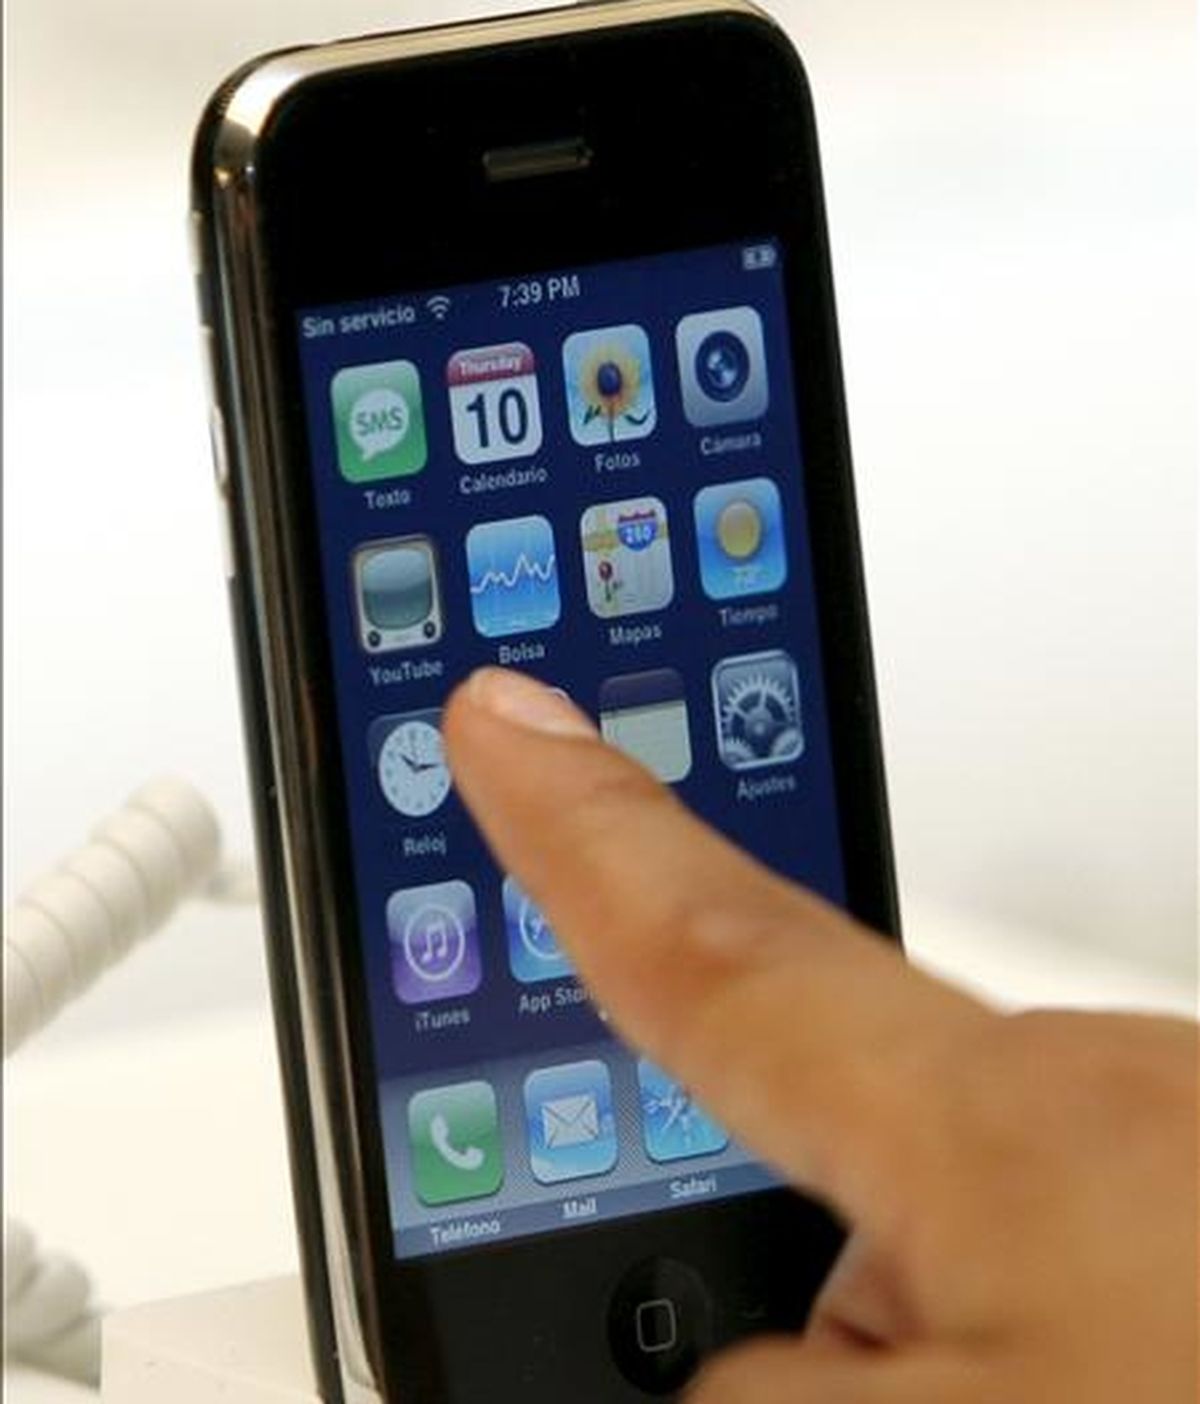 Detalle del nuevo teléfono móvil de Apple, iPhone 3G. EFE